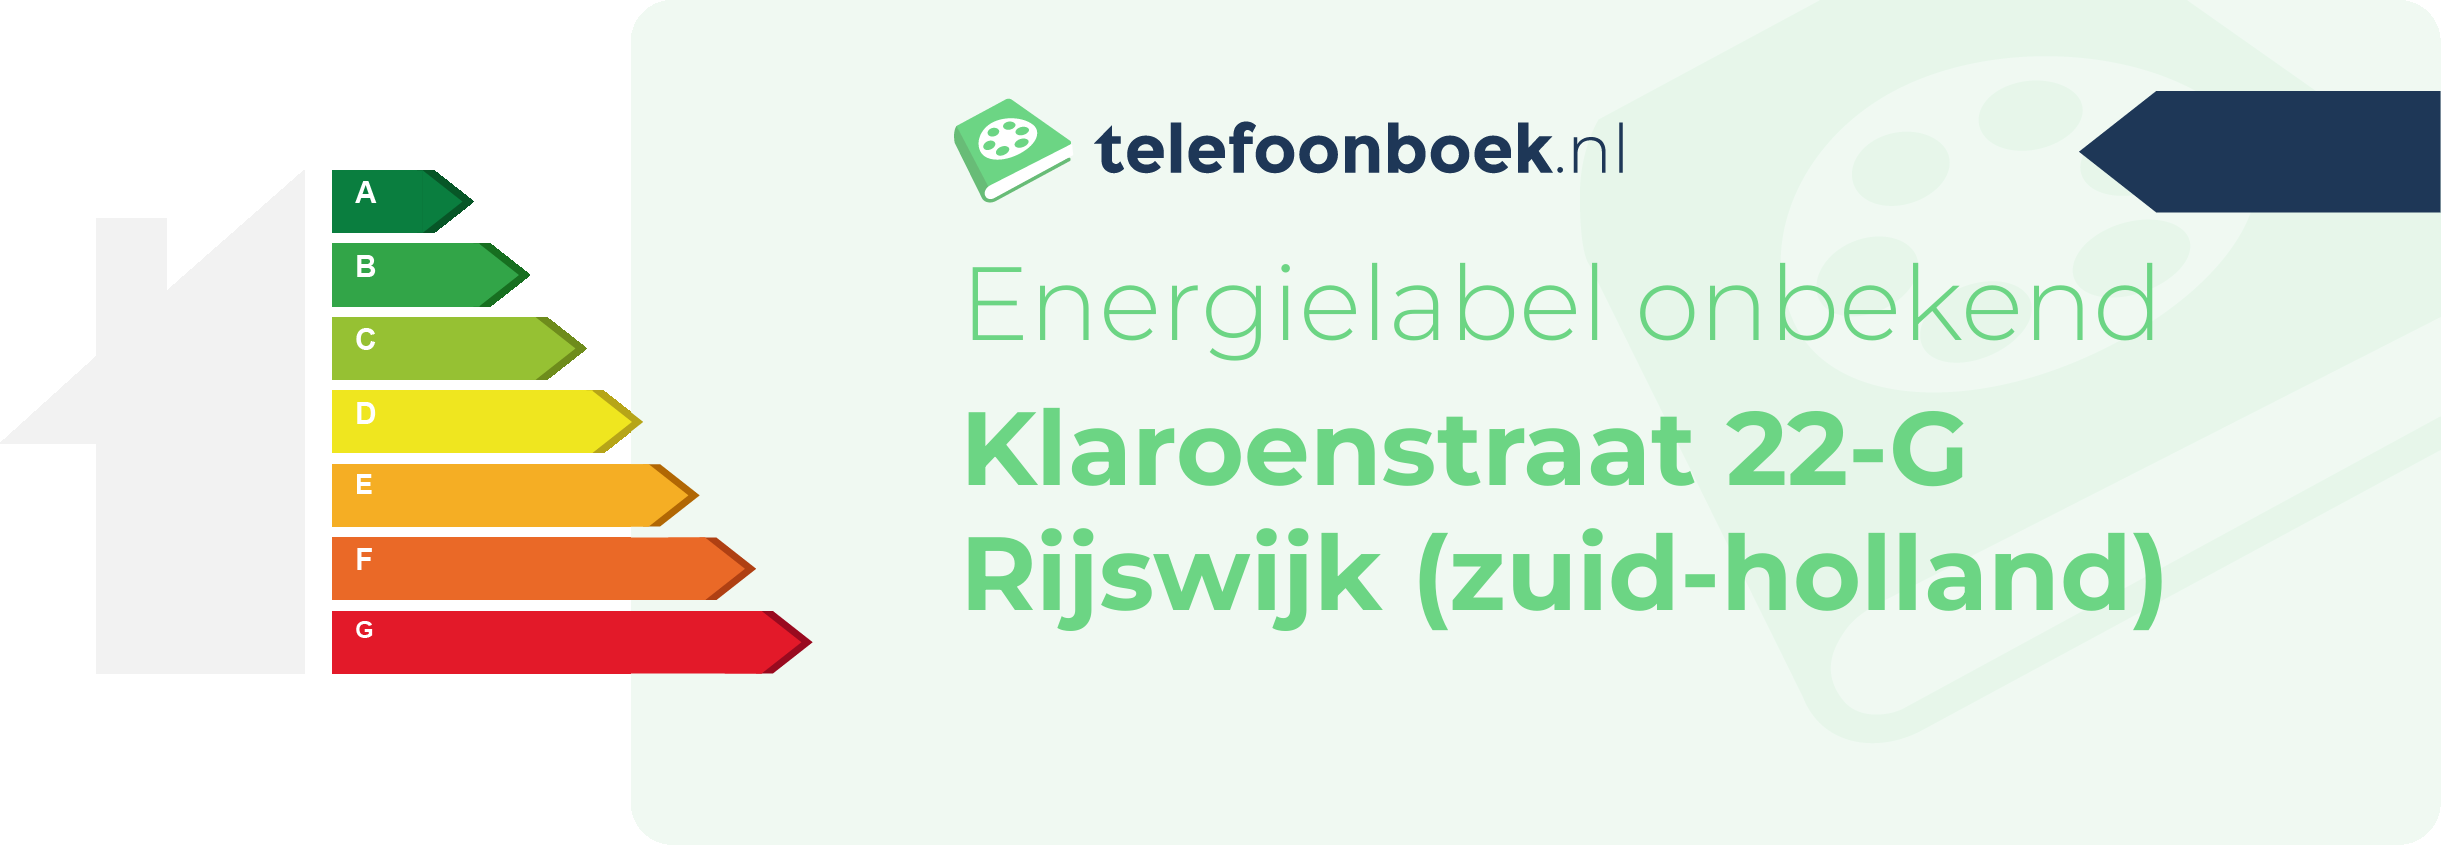 Energielabel Klaroenstraat 22-G Rijswijk (Zuid-Holland)